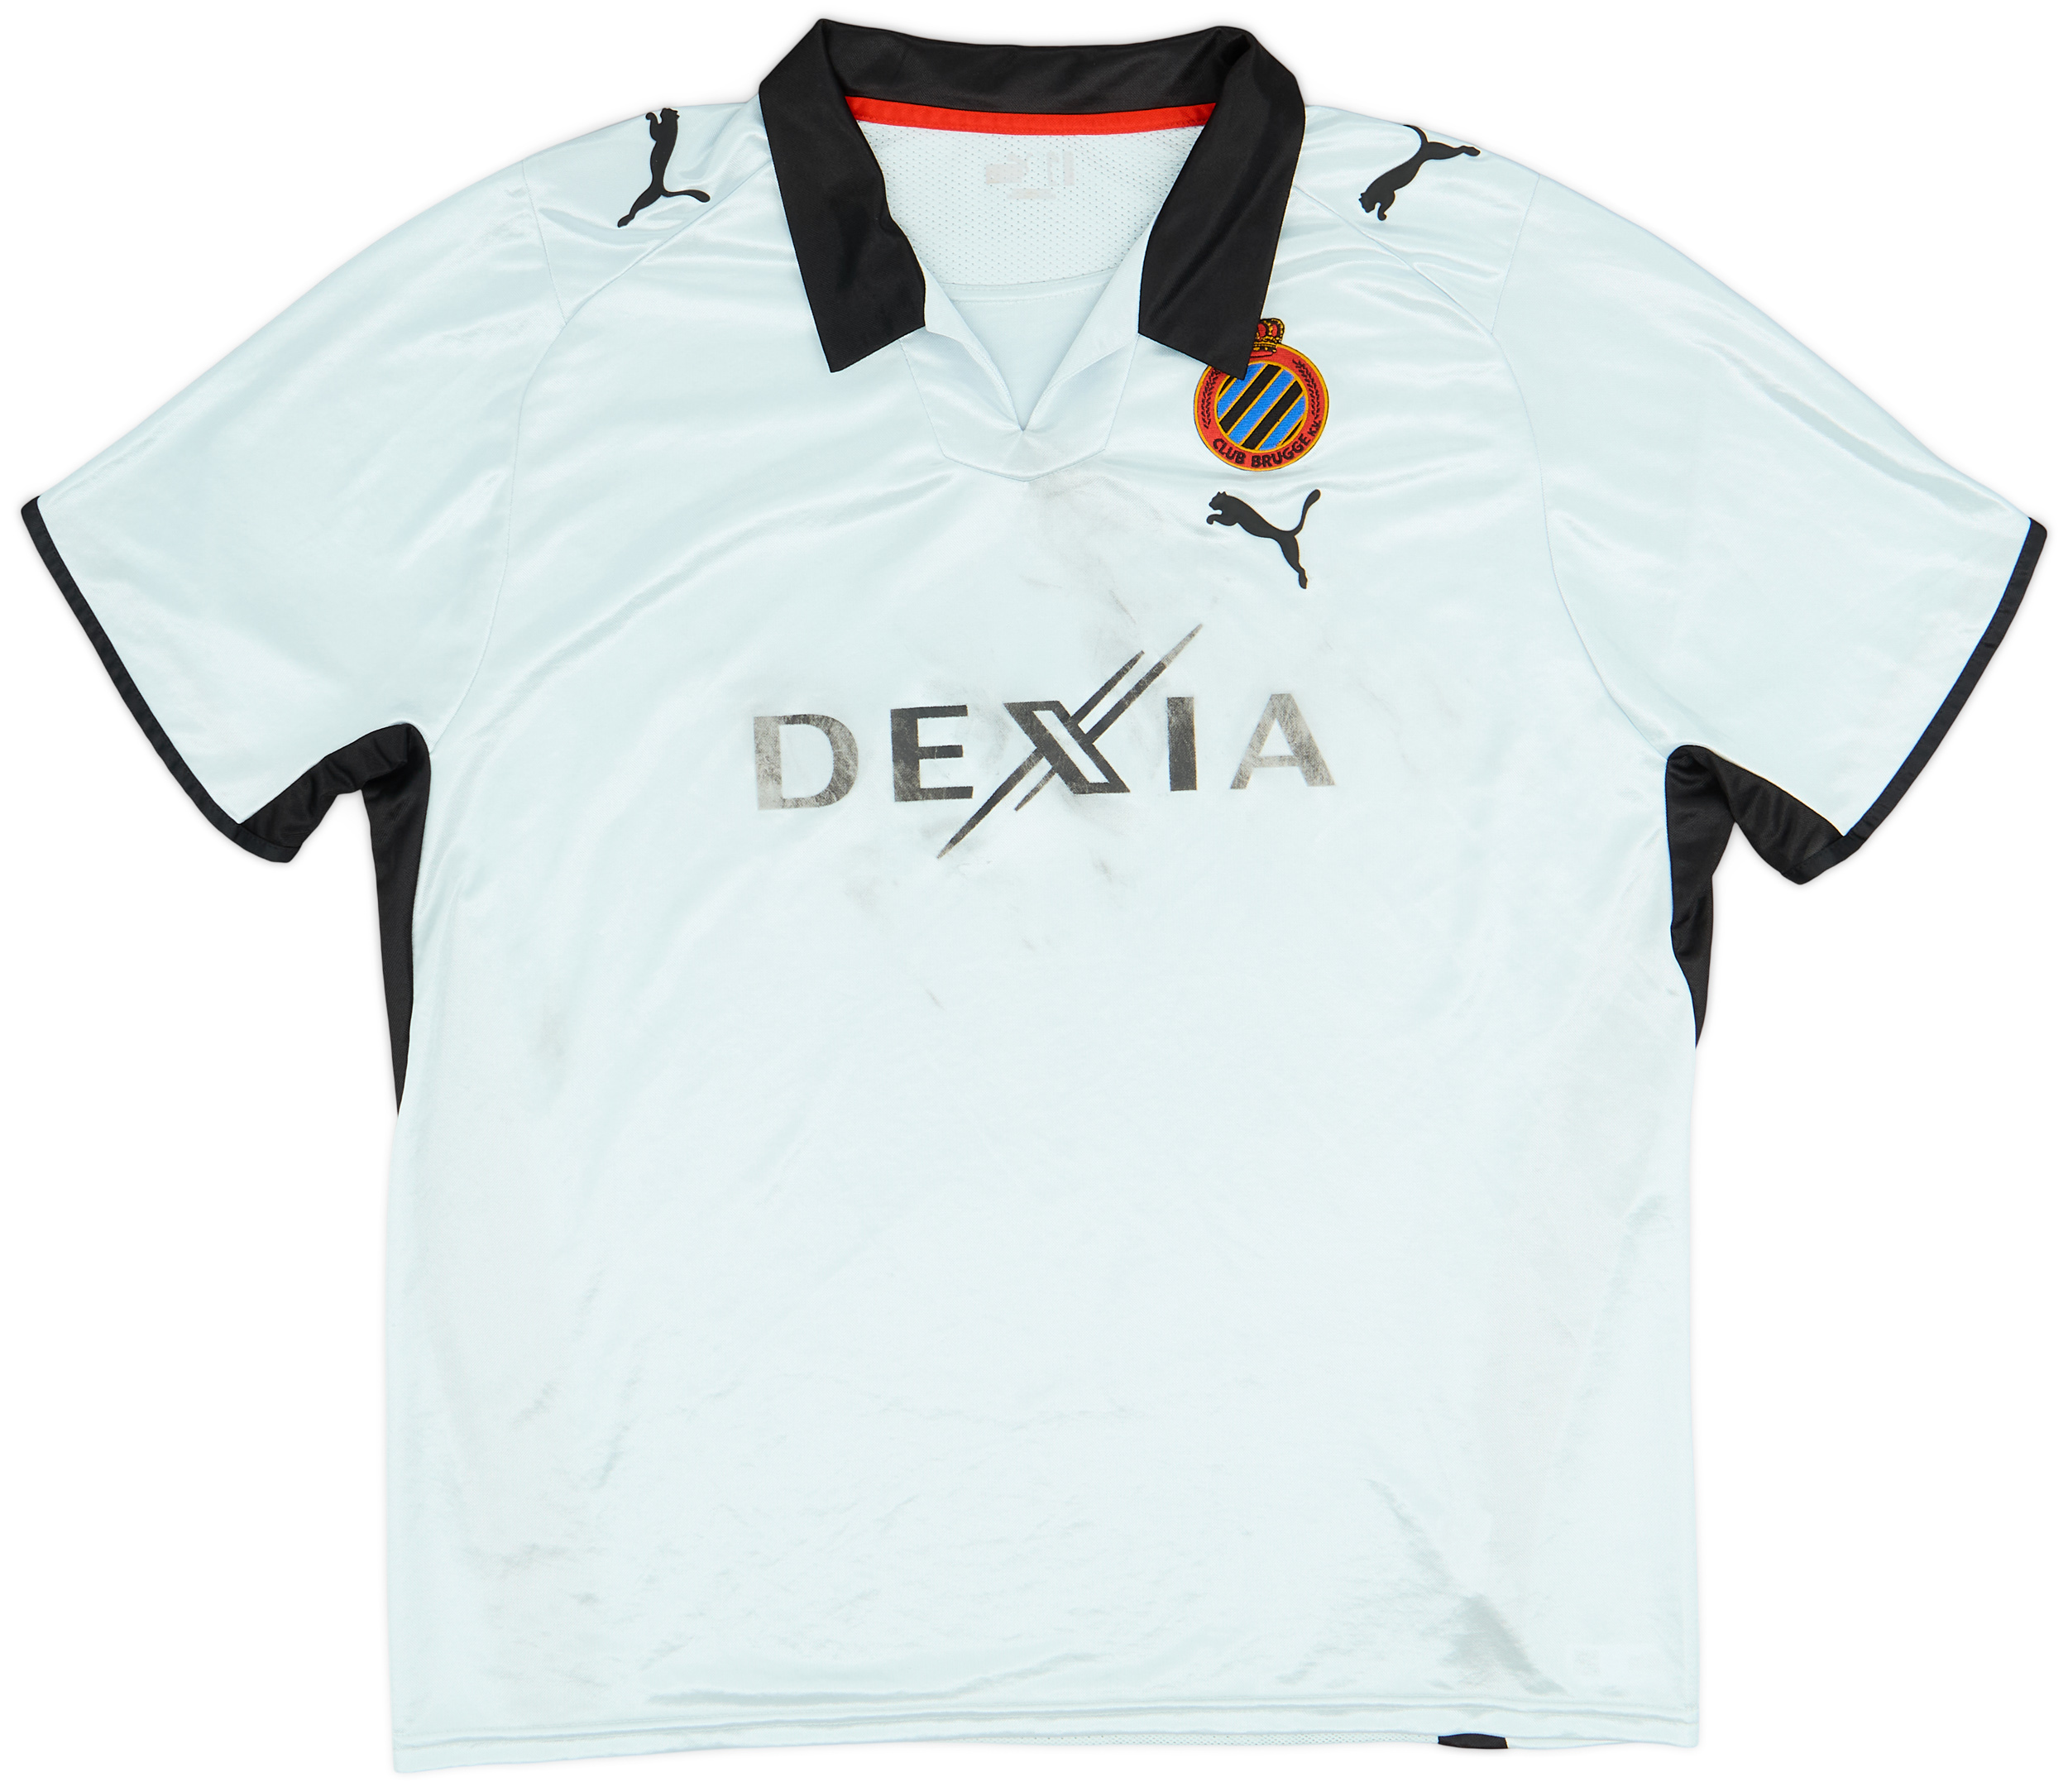 Club Brugge  Fora camisa (Original)